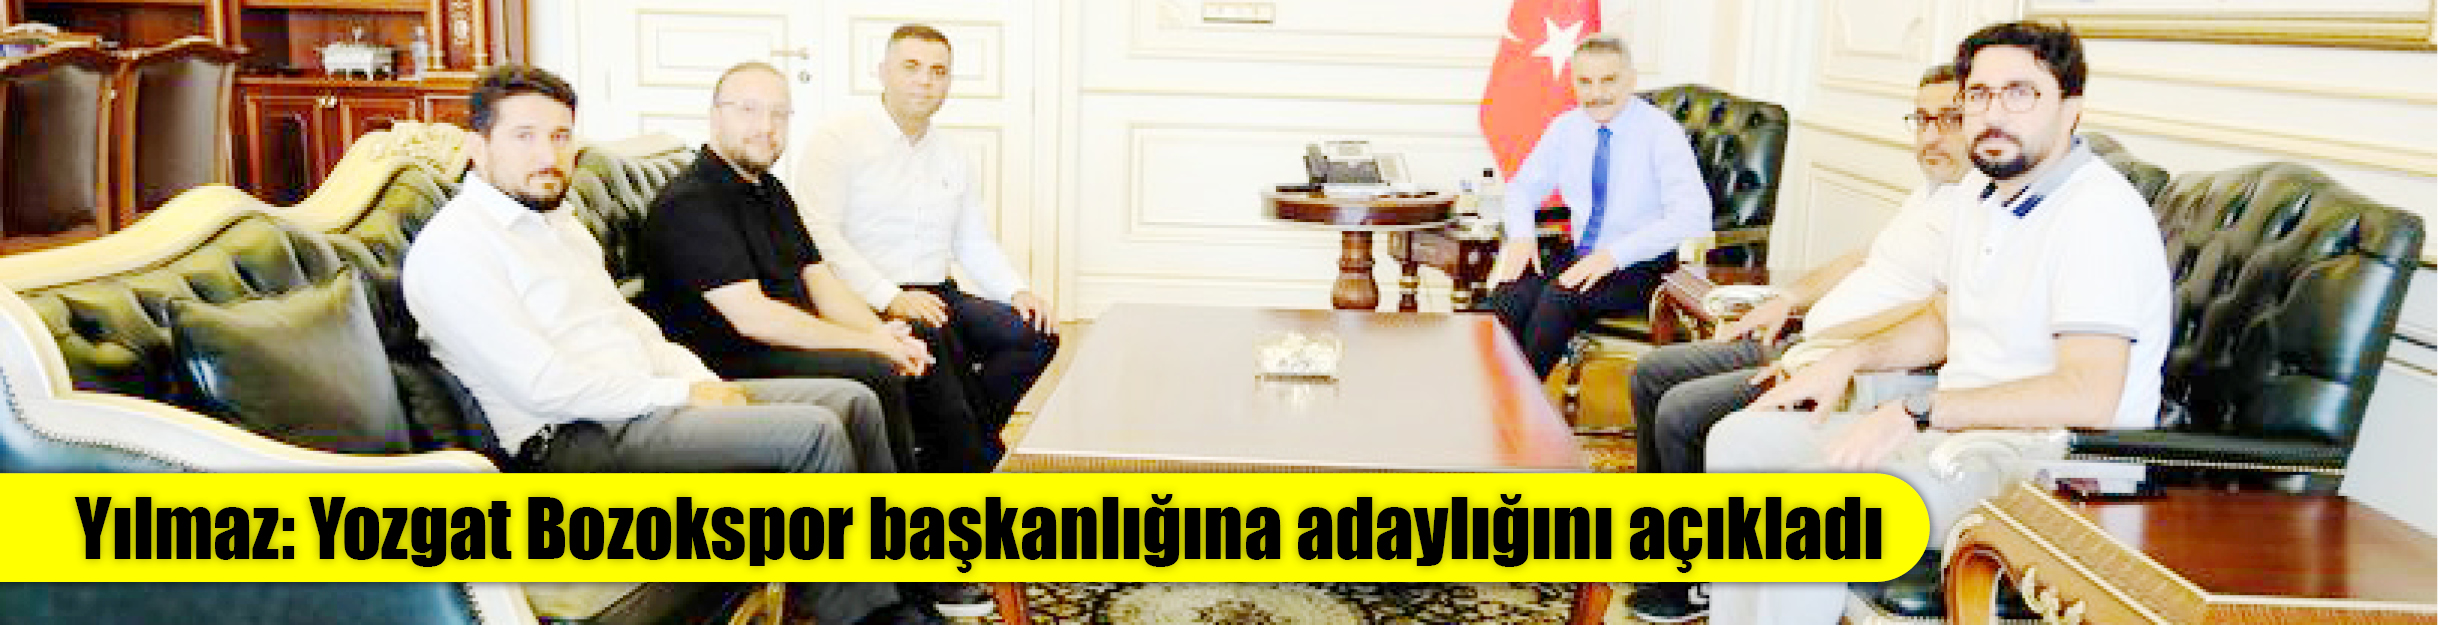 Yılmaz: Yozgat Bozokspor başkanlığına adaylığını açıkladı